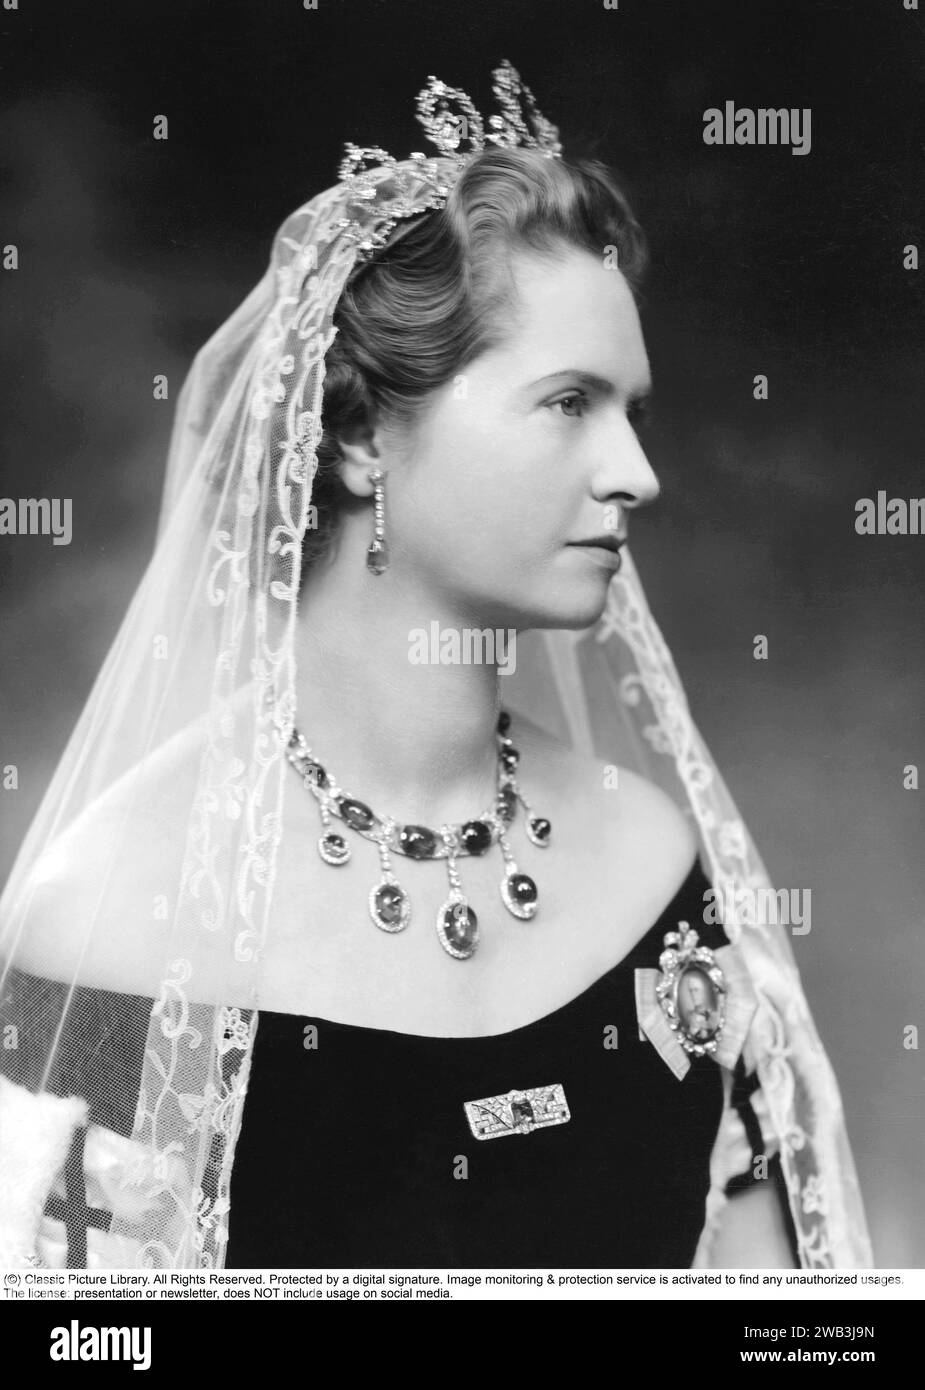 Prinzessin Sibylla von Sachsen-Coburg und Gotha. januar 1908 bis 28. november 1972. Sie war Mitglied der schwedischen Königsfamilie und Mutter des heutigen schwedischen Königs Carl XVI. Gustaf. Sie wurde schwedische Prinzessin, als sie 1932 den Herzog Gustaf Adolf von Västerbotten heiratete. Sie hatte damit die Aussicht, eines Tages Königin zu werden, aber der Prinz wurde 1947 bei einem Flugzeugabsturz getötet und lebte nicht mehr auf dem schwedischen Thron. Ihr Sohn wurde im Jahr nach ihrem Tod König. 1947 in einem Diadem von E. Wolff & Co. Dargestellt, war es ein Geschenk des Herzogs und der Herzogin von Connaught an ihre Stockfoto